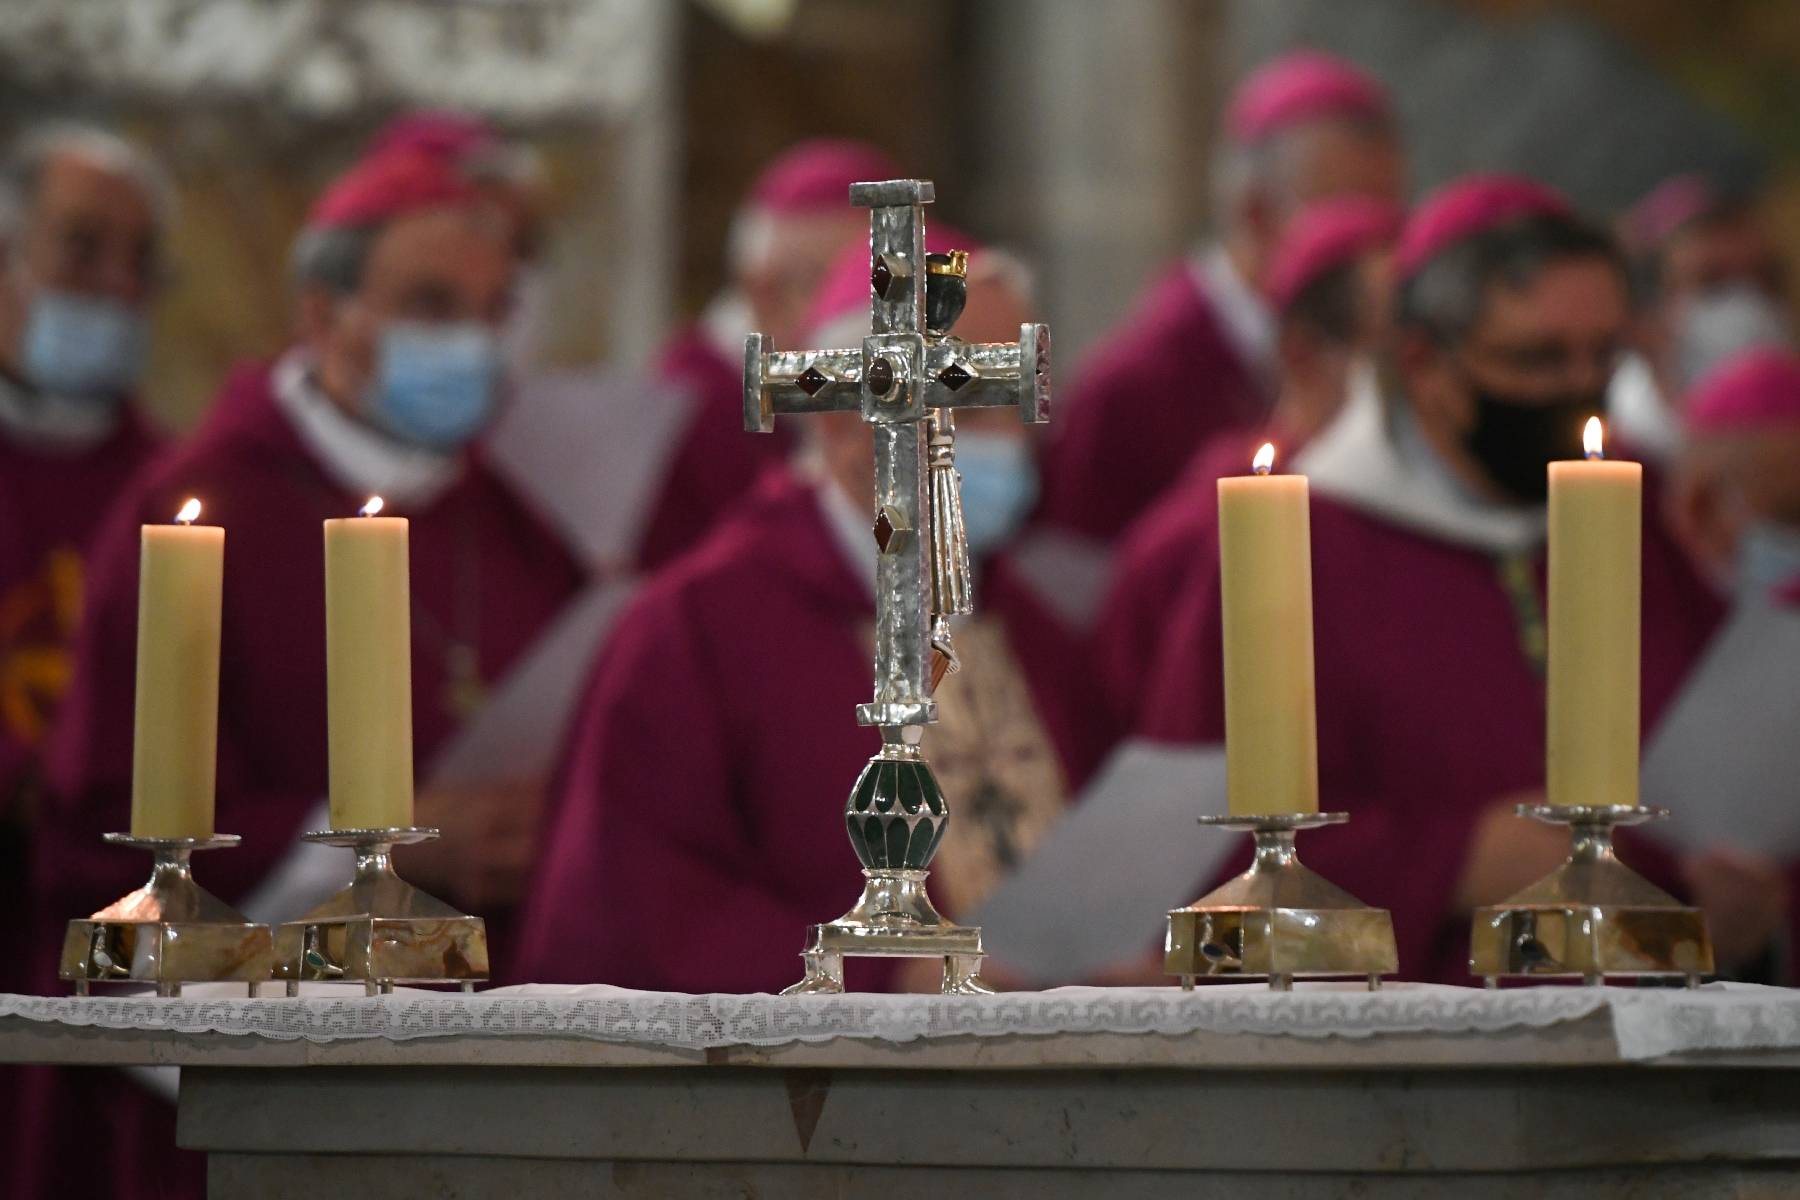 Réunis à Lourdes, les évêques attendus sur la prévention des violences sexuelles